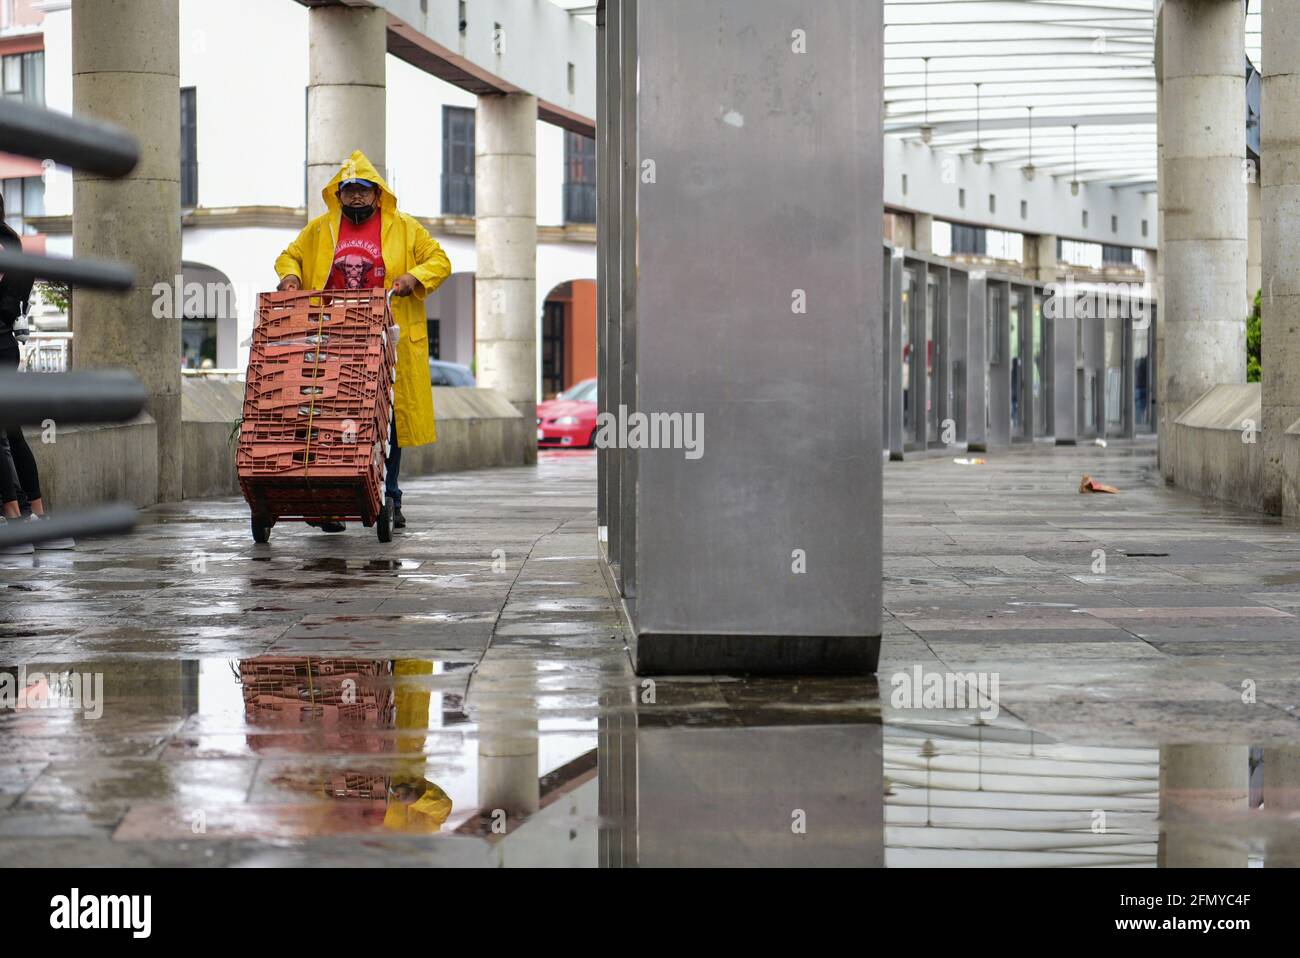 Non Exclusive: TOLUCA, MEXIKO - MAI 12: Eine Person drückt eine Schubkarre, die mit einem Regenmantel bedeckt ist, weil die Stadt mit heftigen Regenfällen und mehr Regenfällen überflutet ist Stockfoto